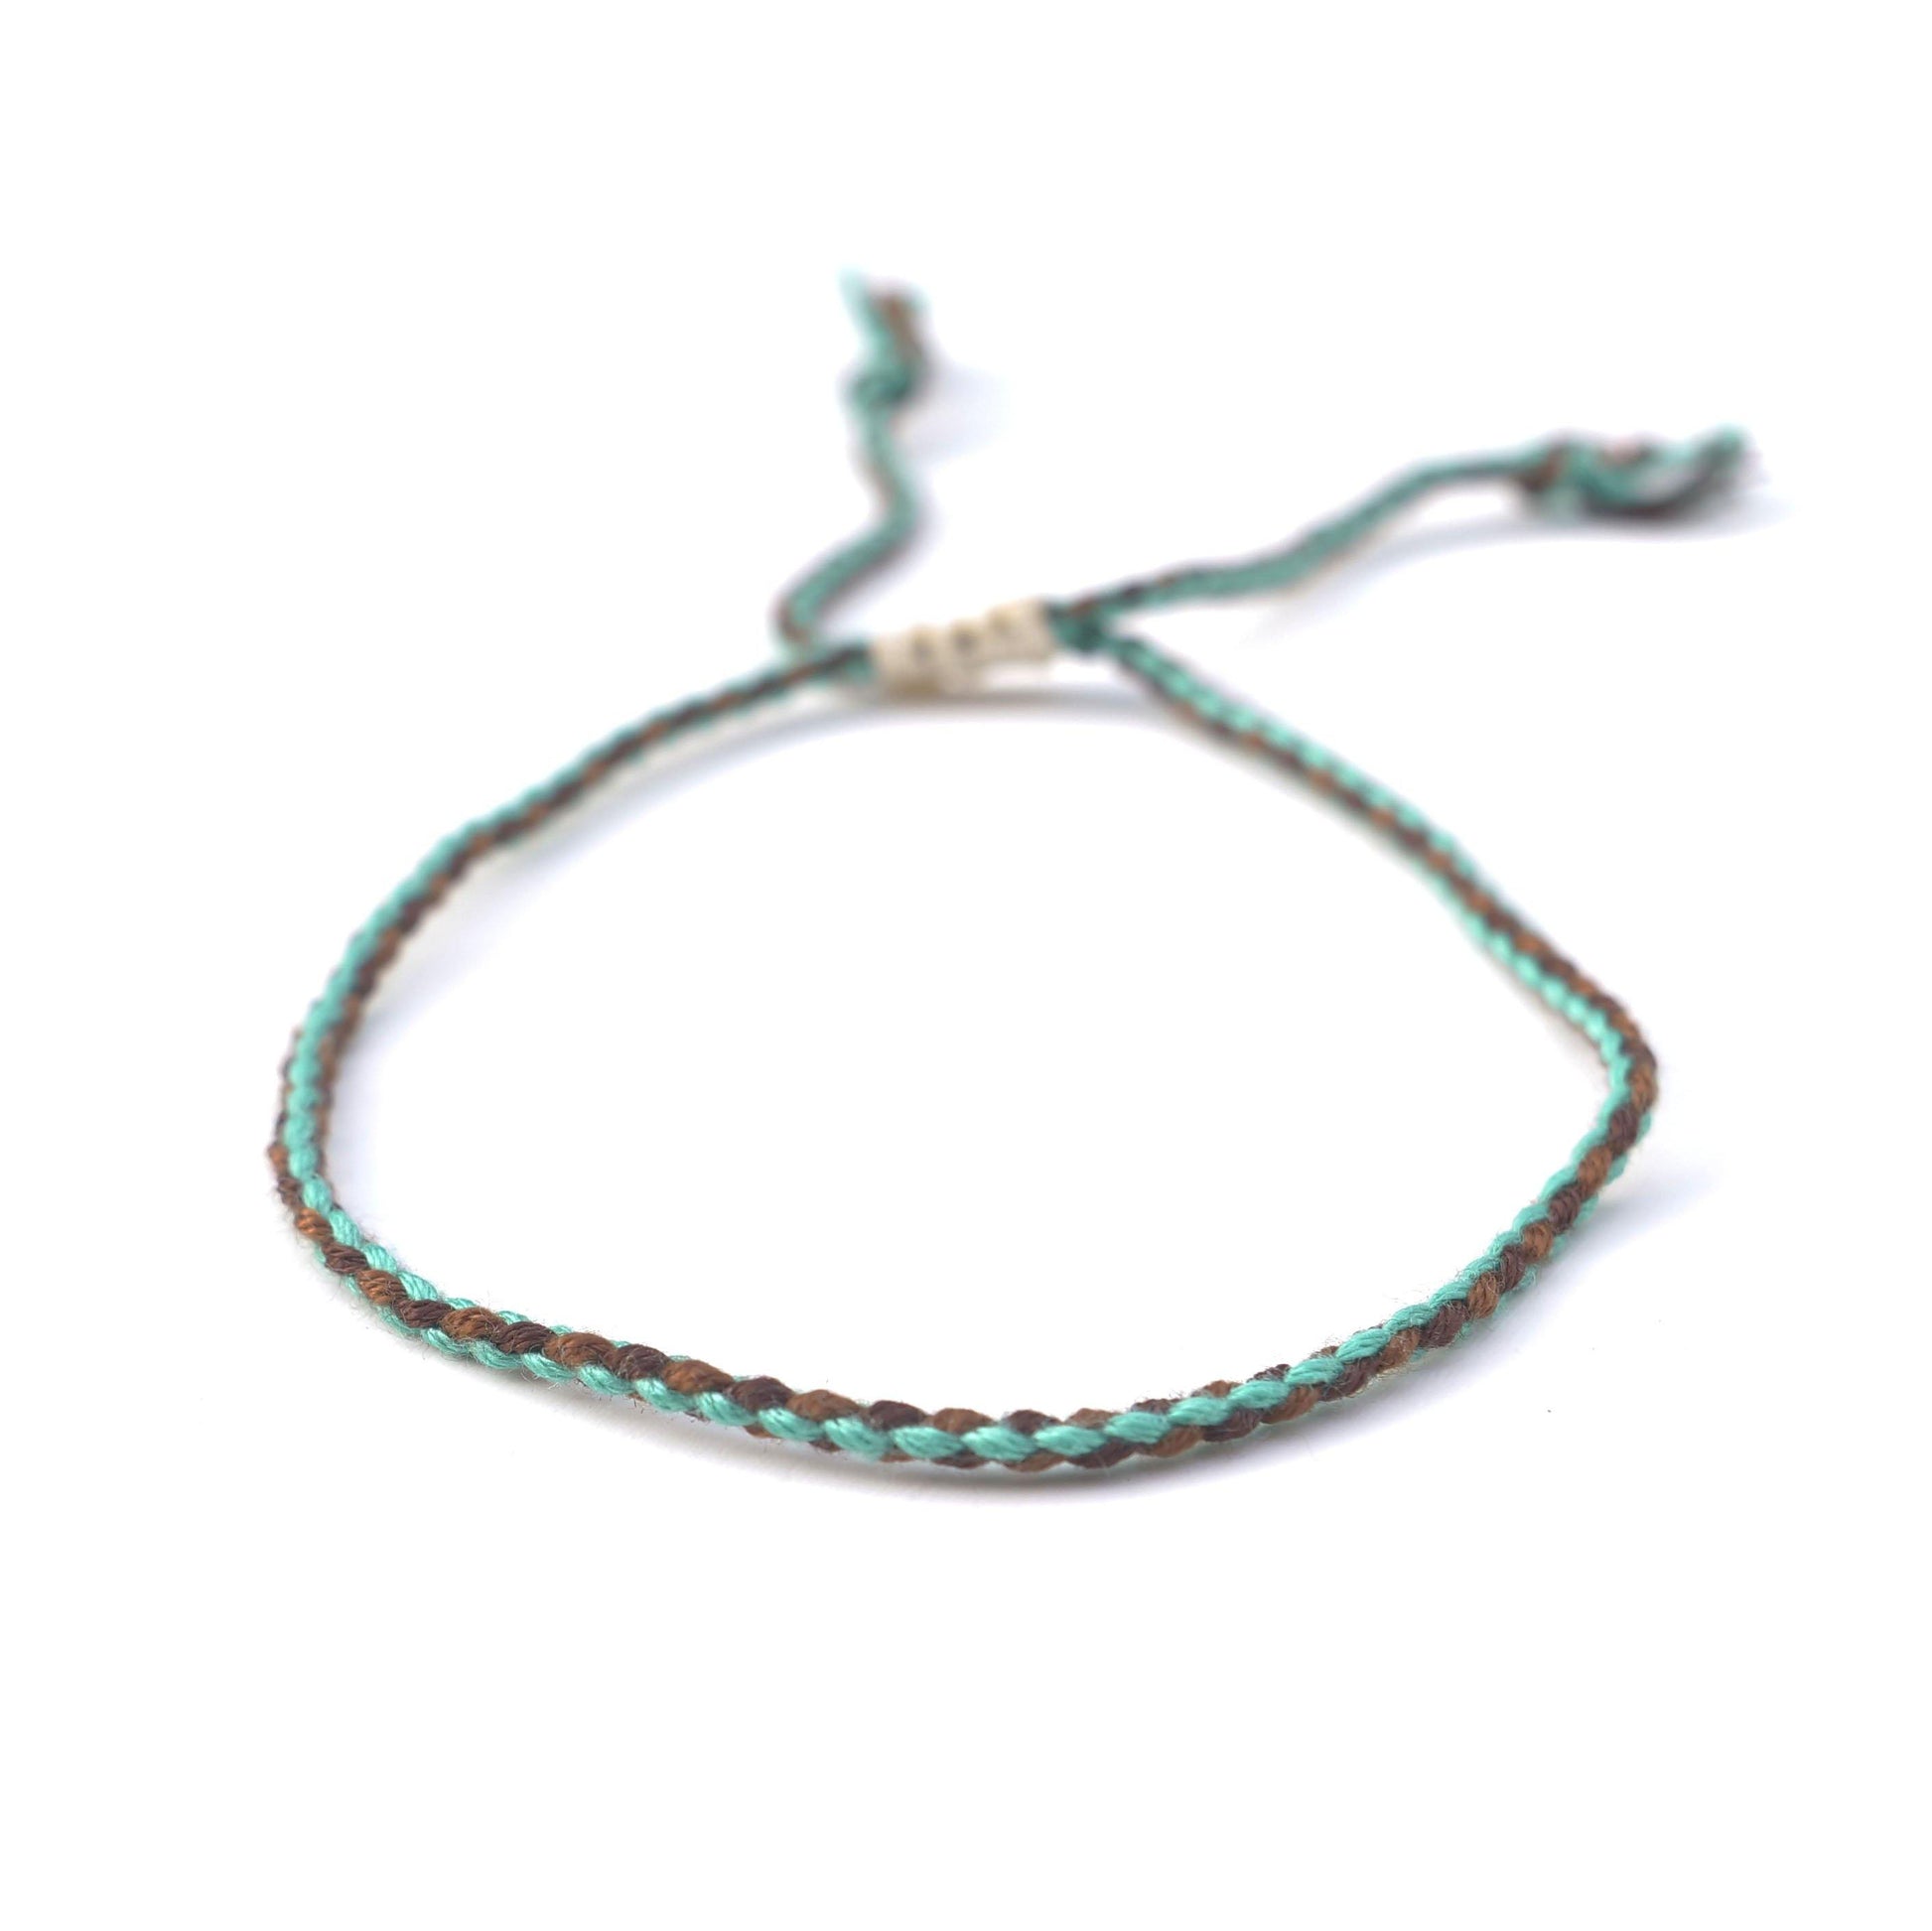 Laos armband (turquoise/bruin) - www.mundobracelets.com